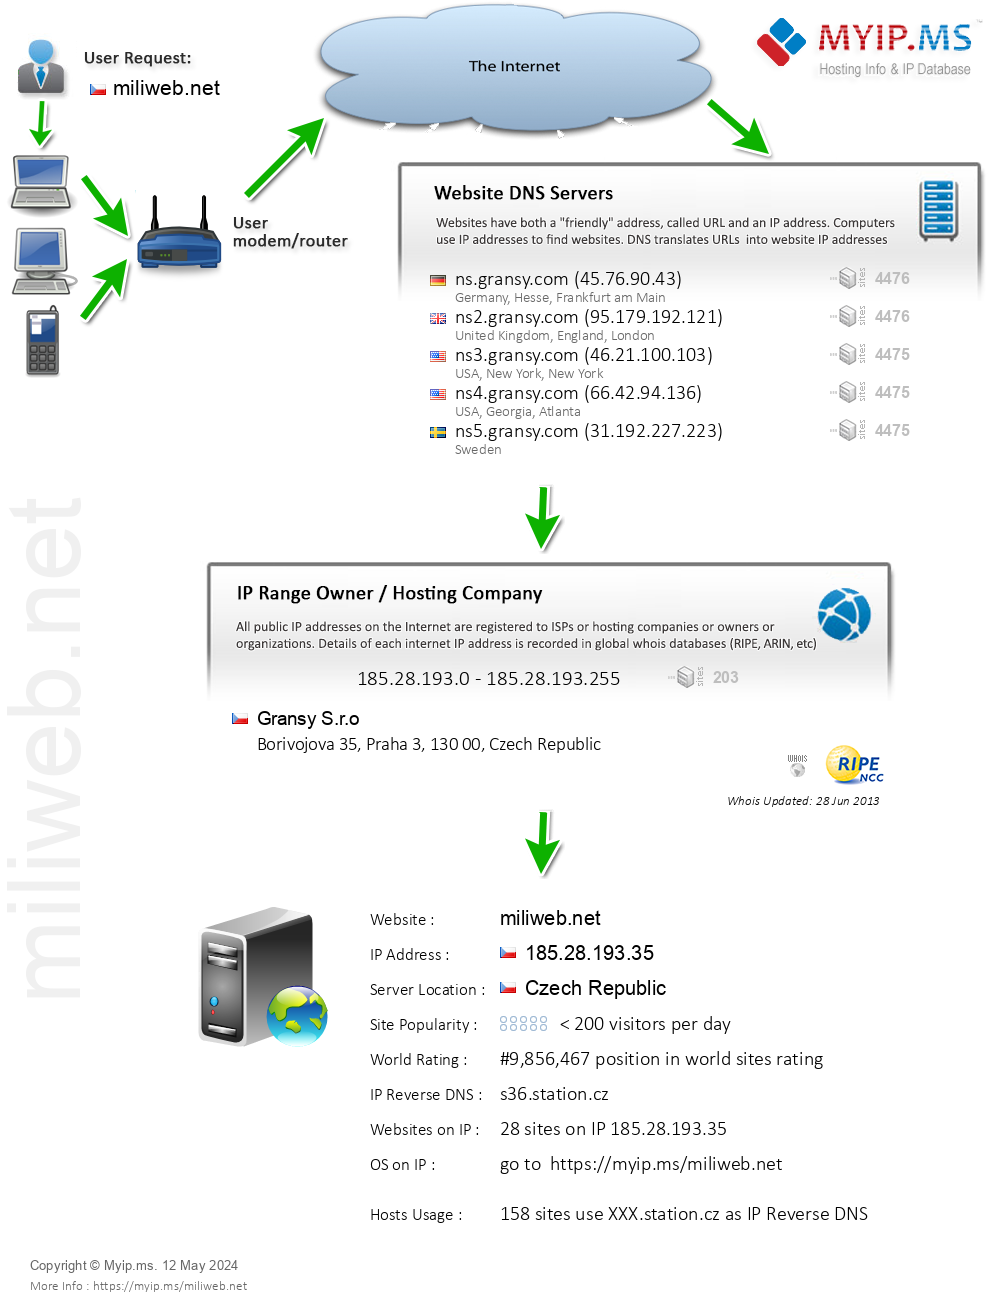 Miliweb.net - Website Hosting Visual IP Diagram